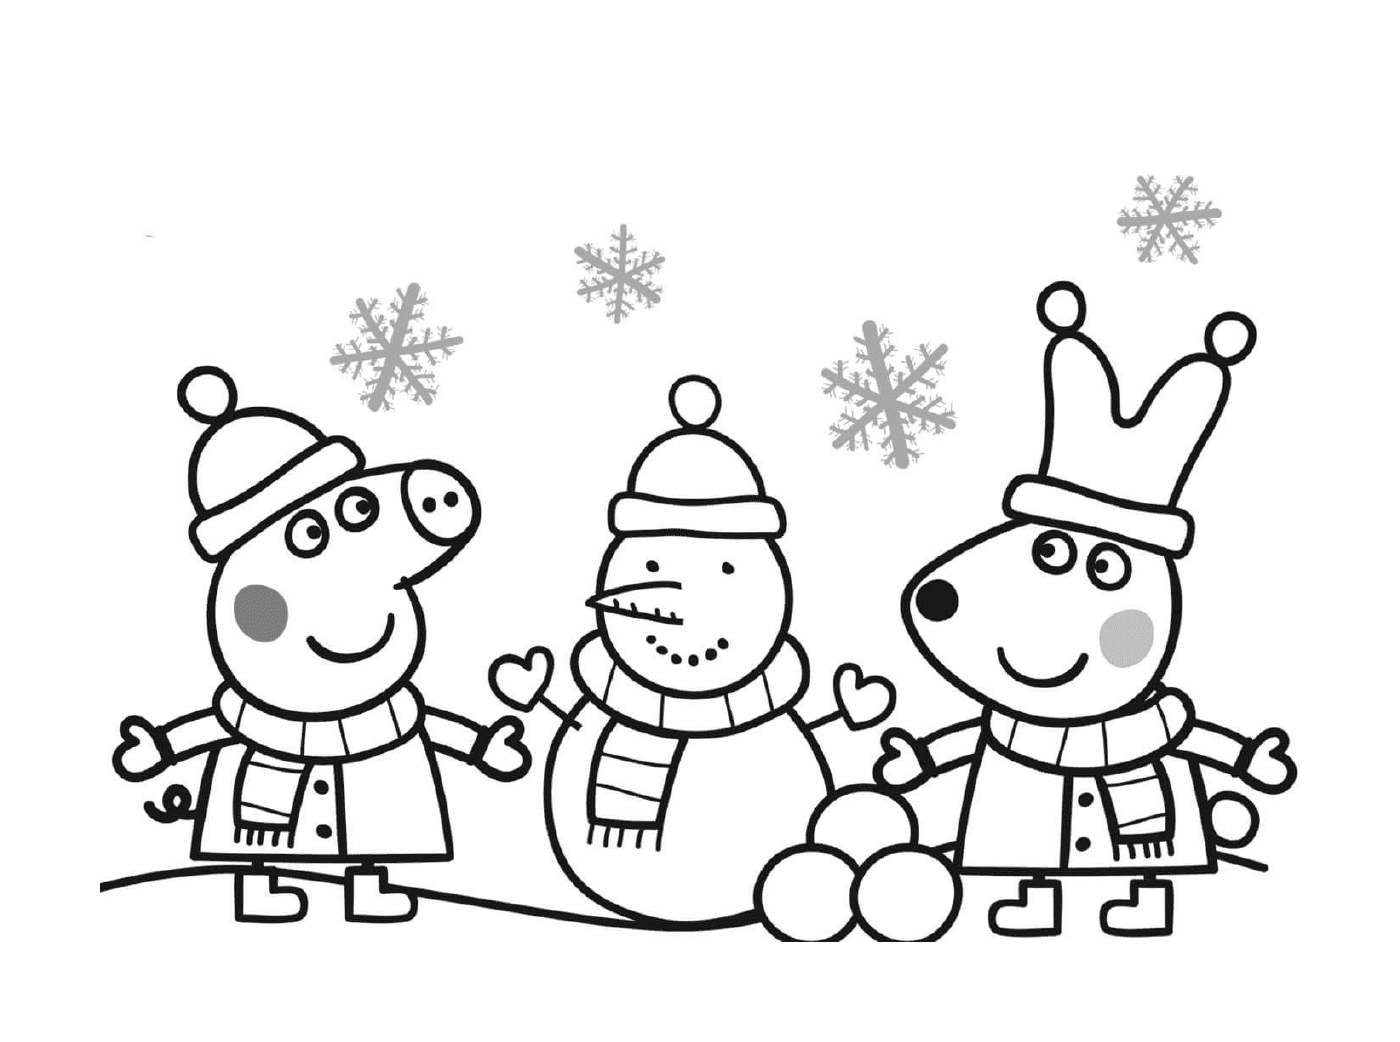  Peppa Pig feiert Weihnachten mit einem Schneemann 